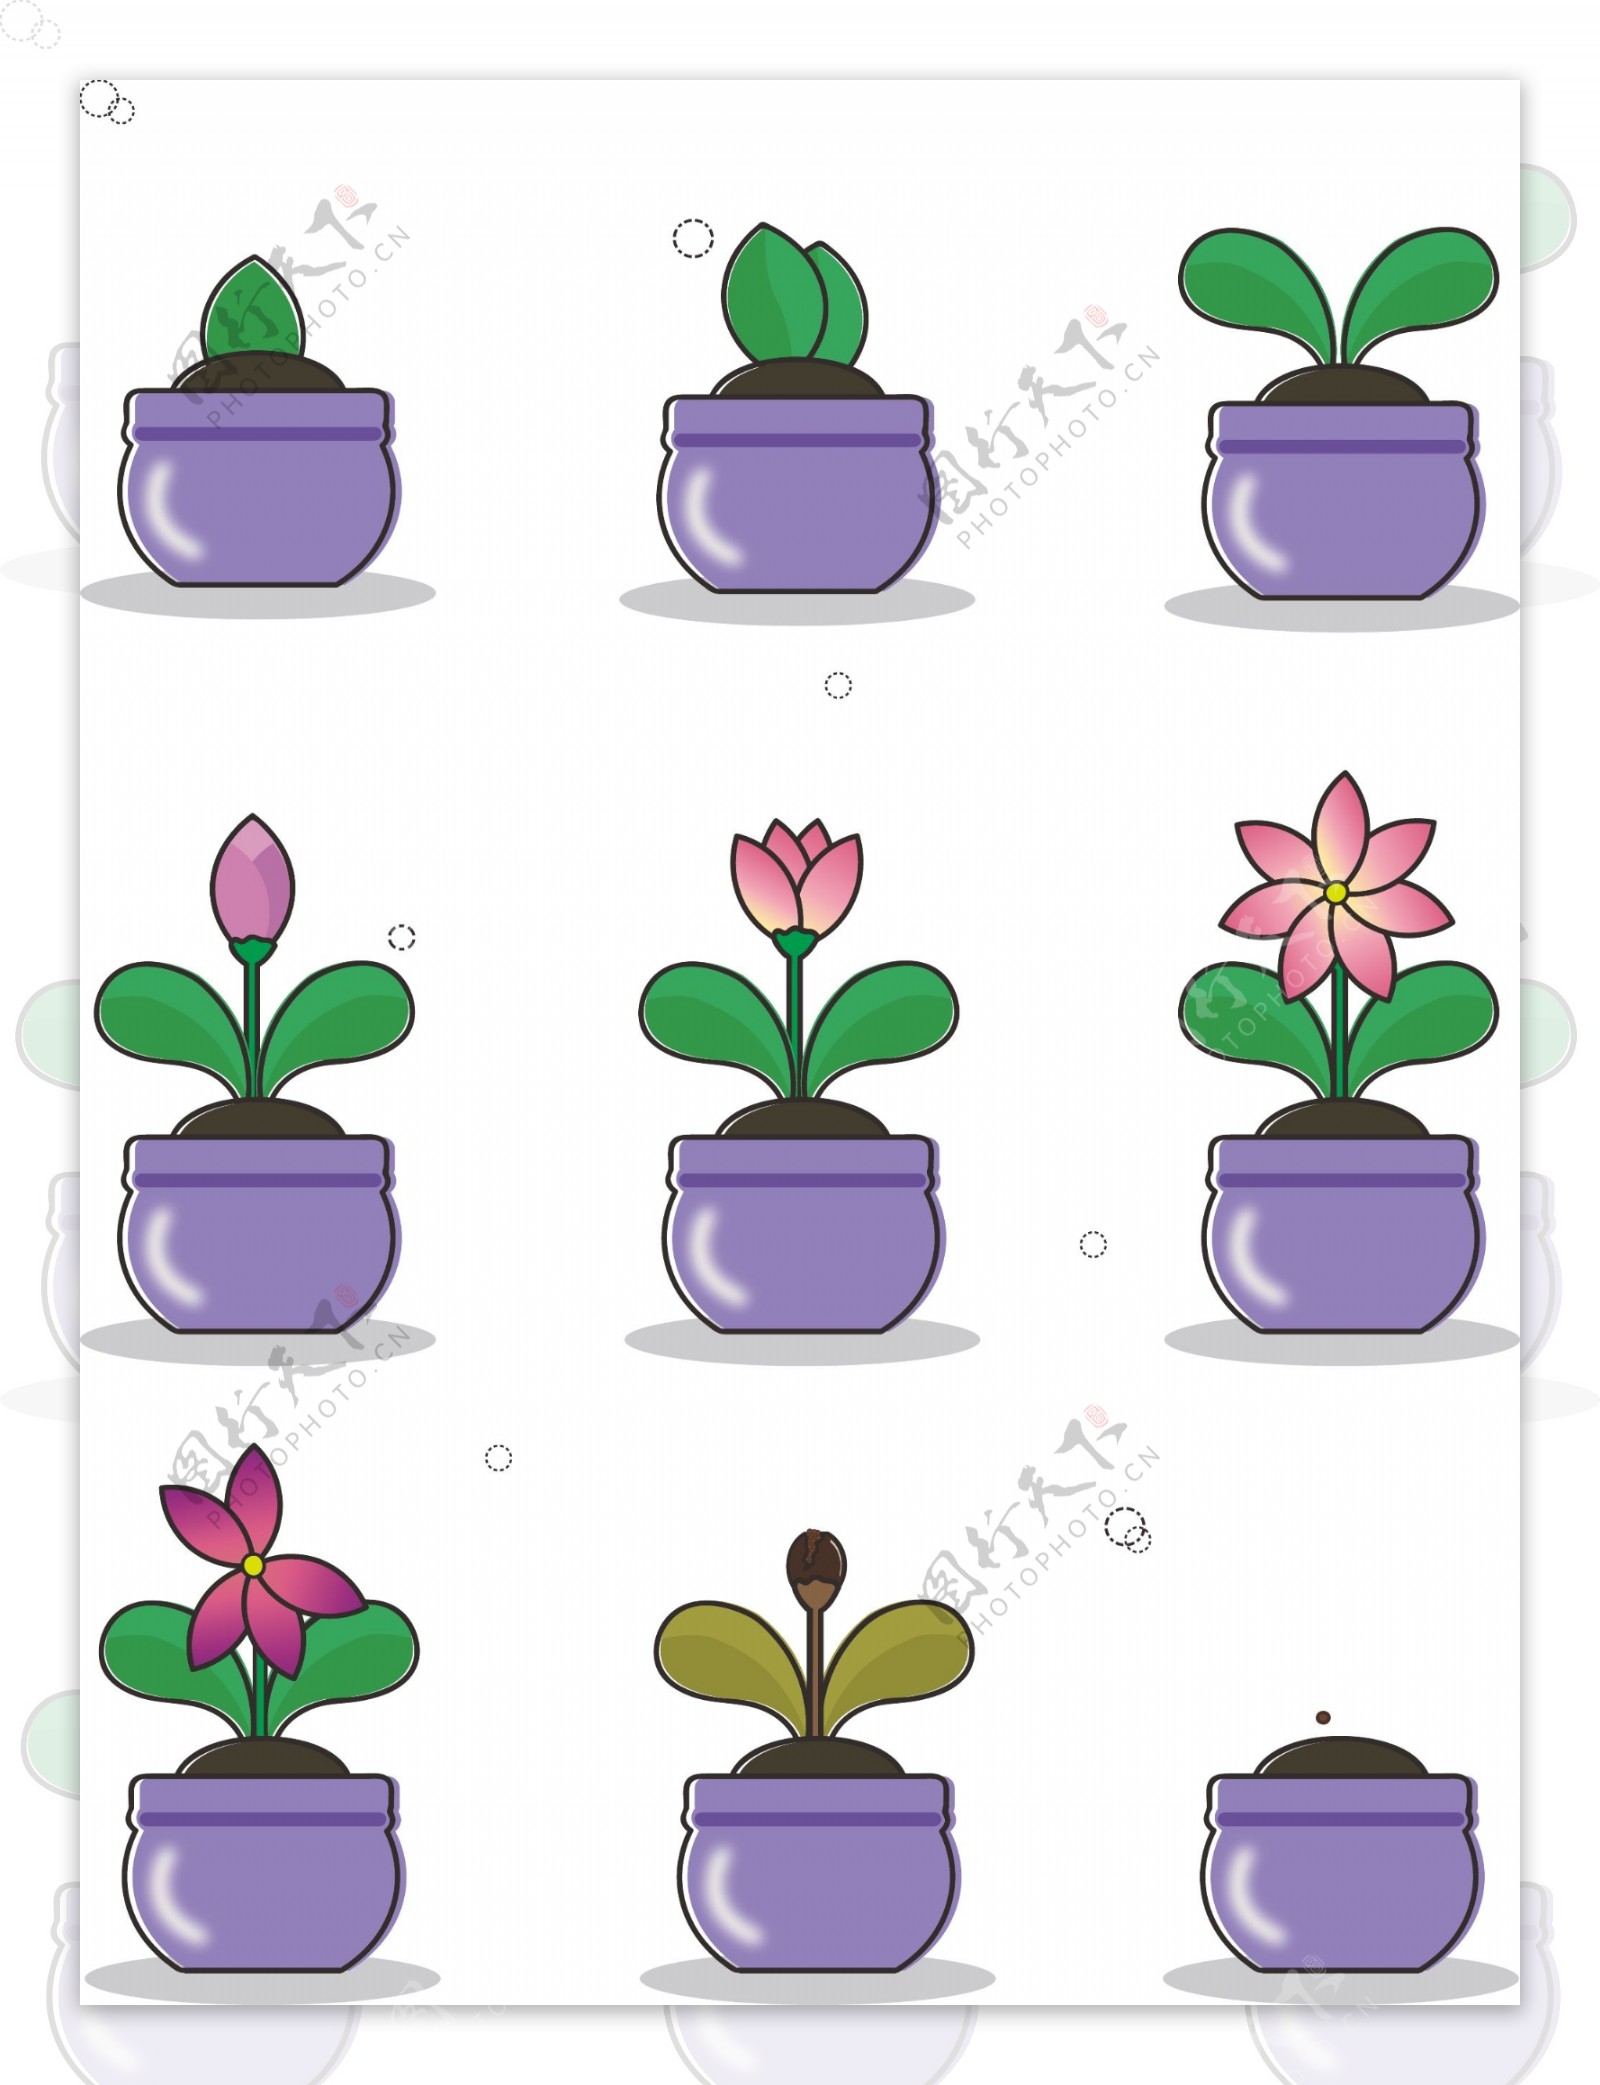 手绘风小清新卡通花朵植物生长过程元素套图